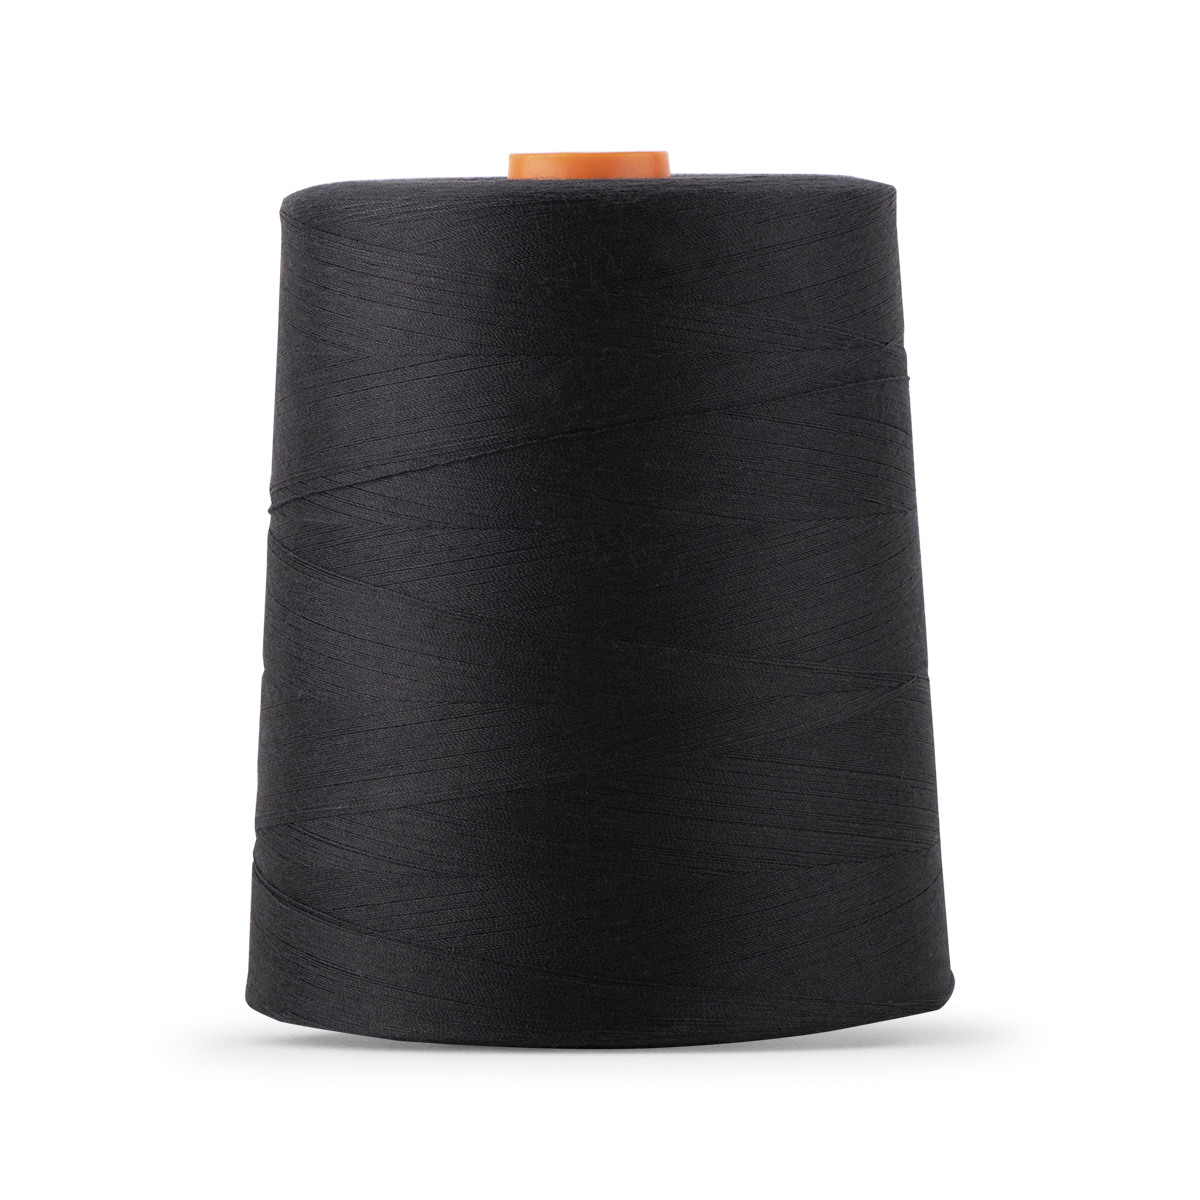 Sashiko Thread - Tex 400 - 109 Yds. - WAWAK Sewing Supplies